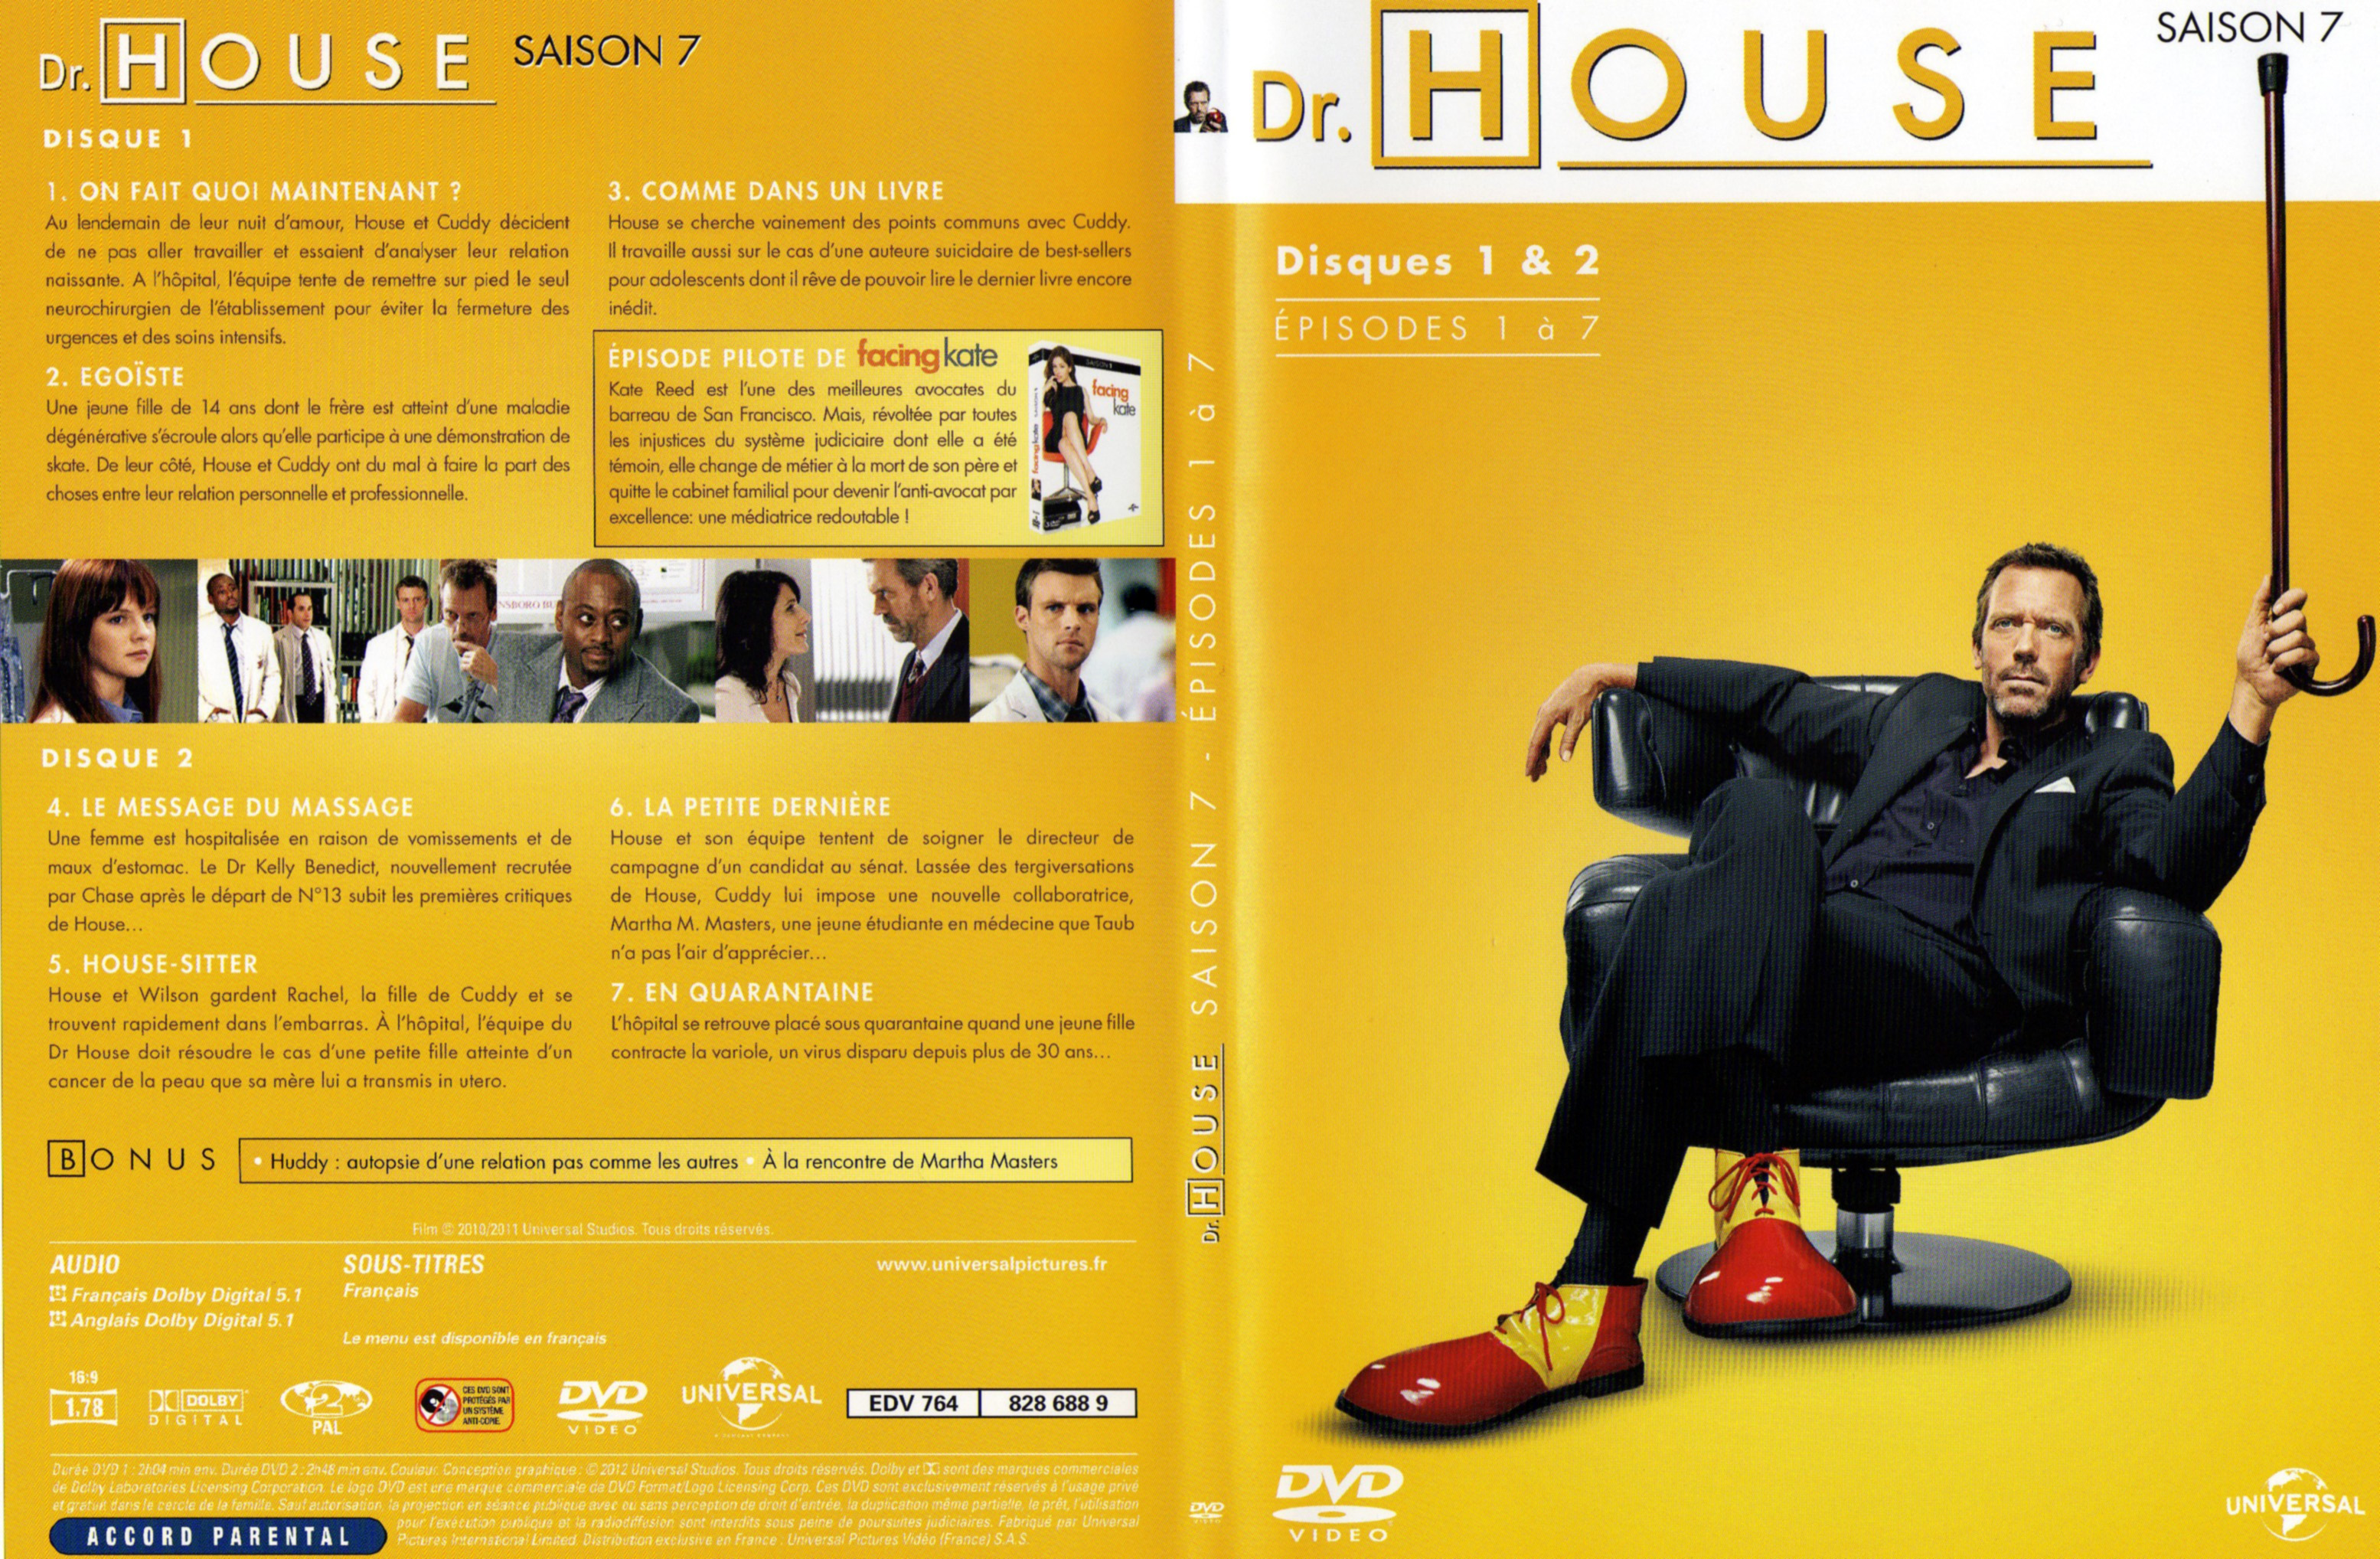 Jaquette DVD Dr House Saison 7 DVD 1